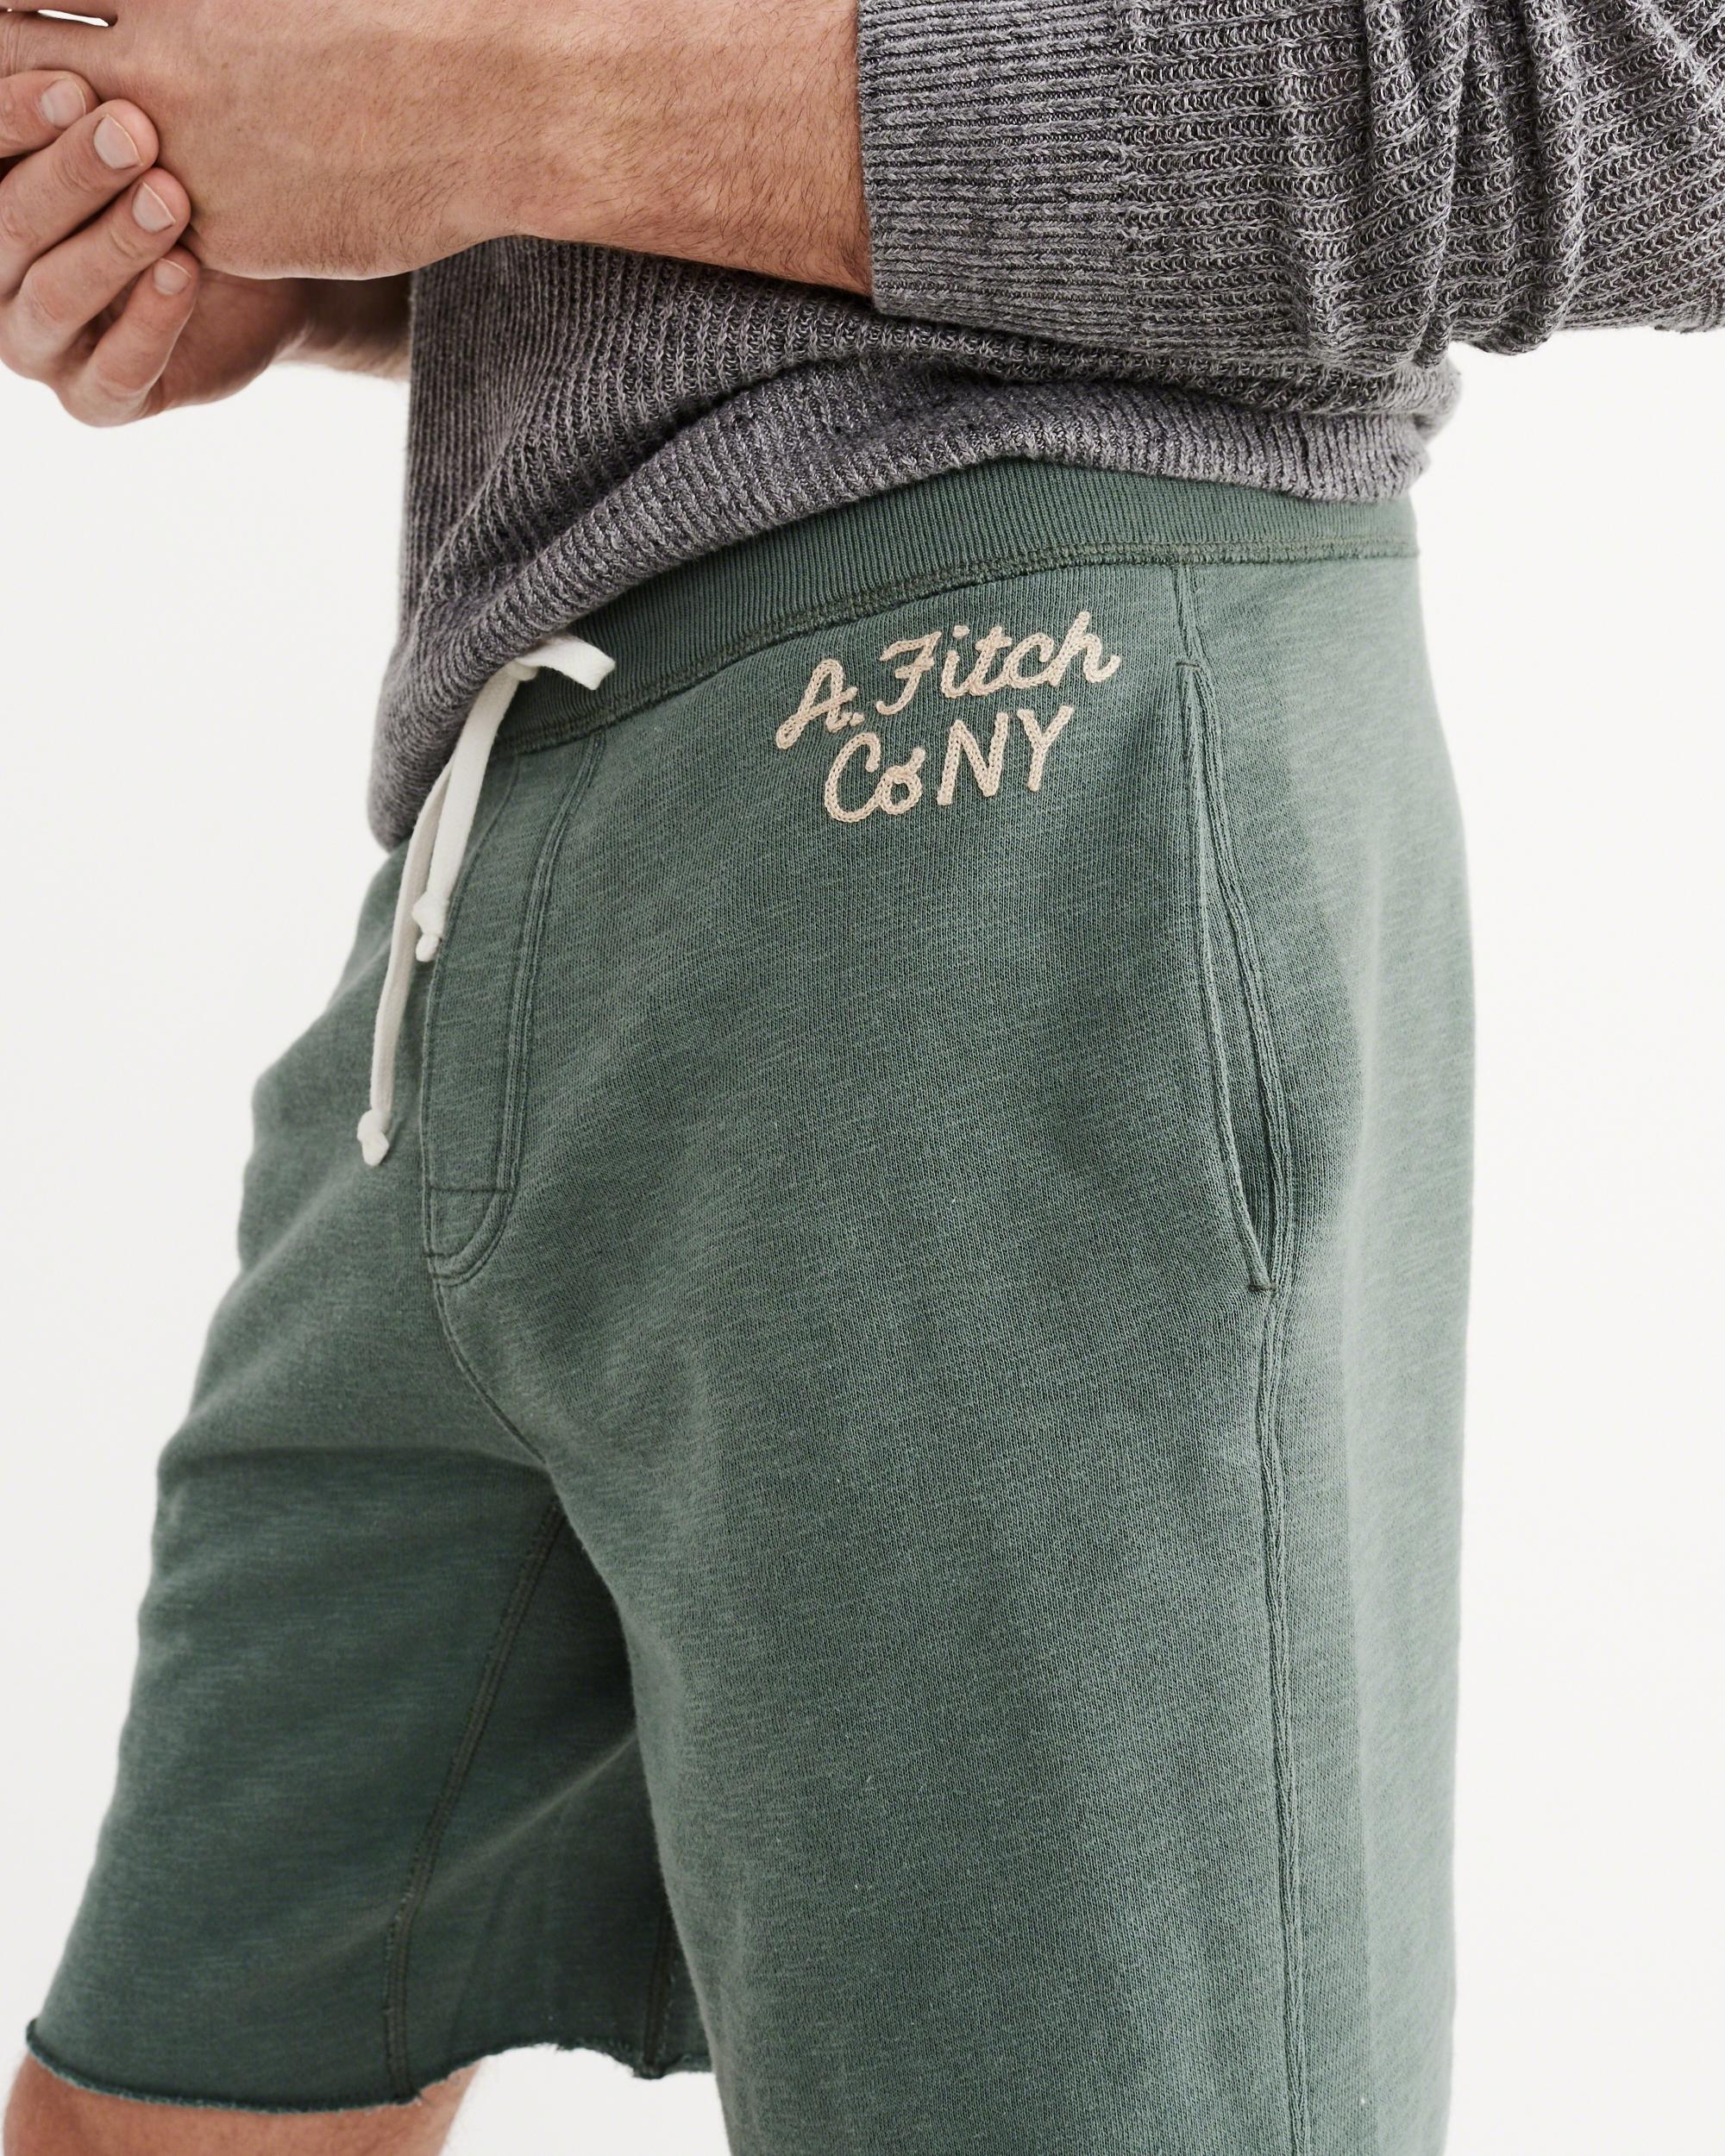 Lyst - Abercrombie & Fitch Logo Fleece Shorts in Green for Men